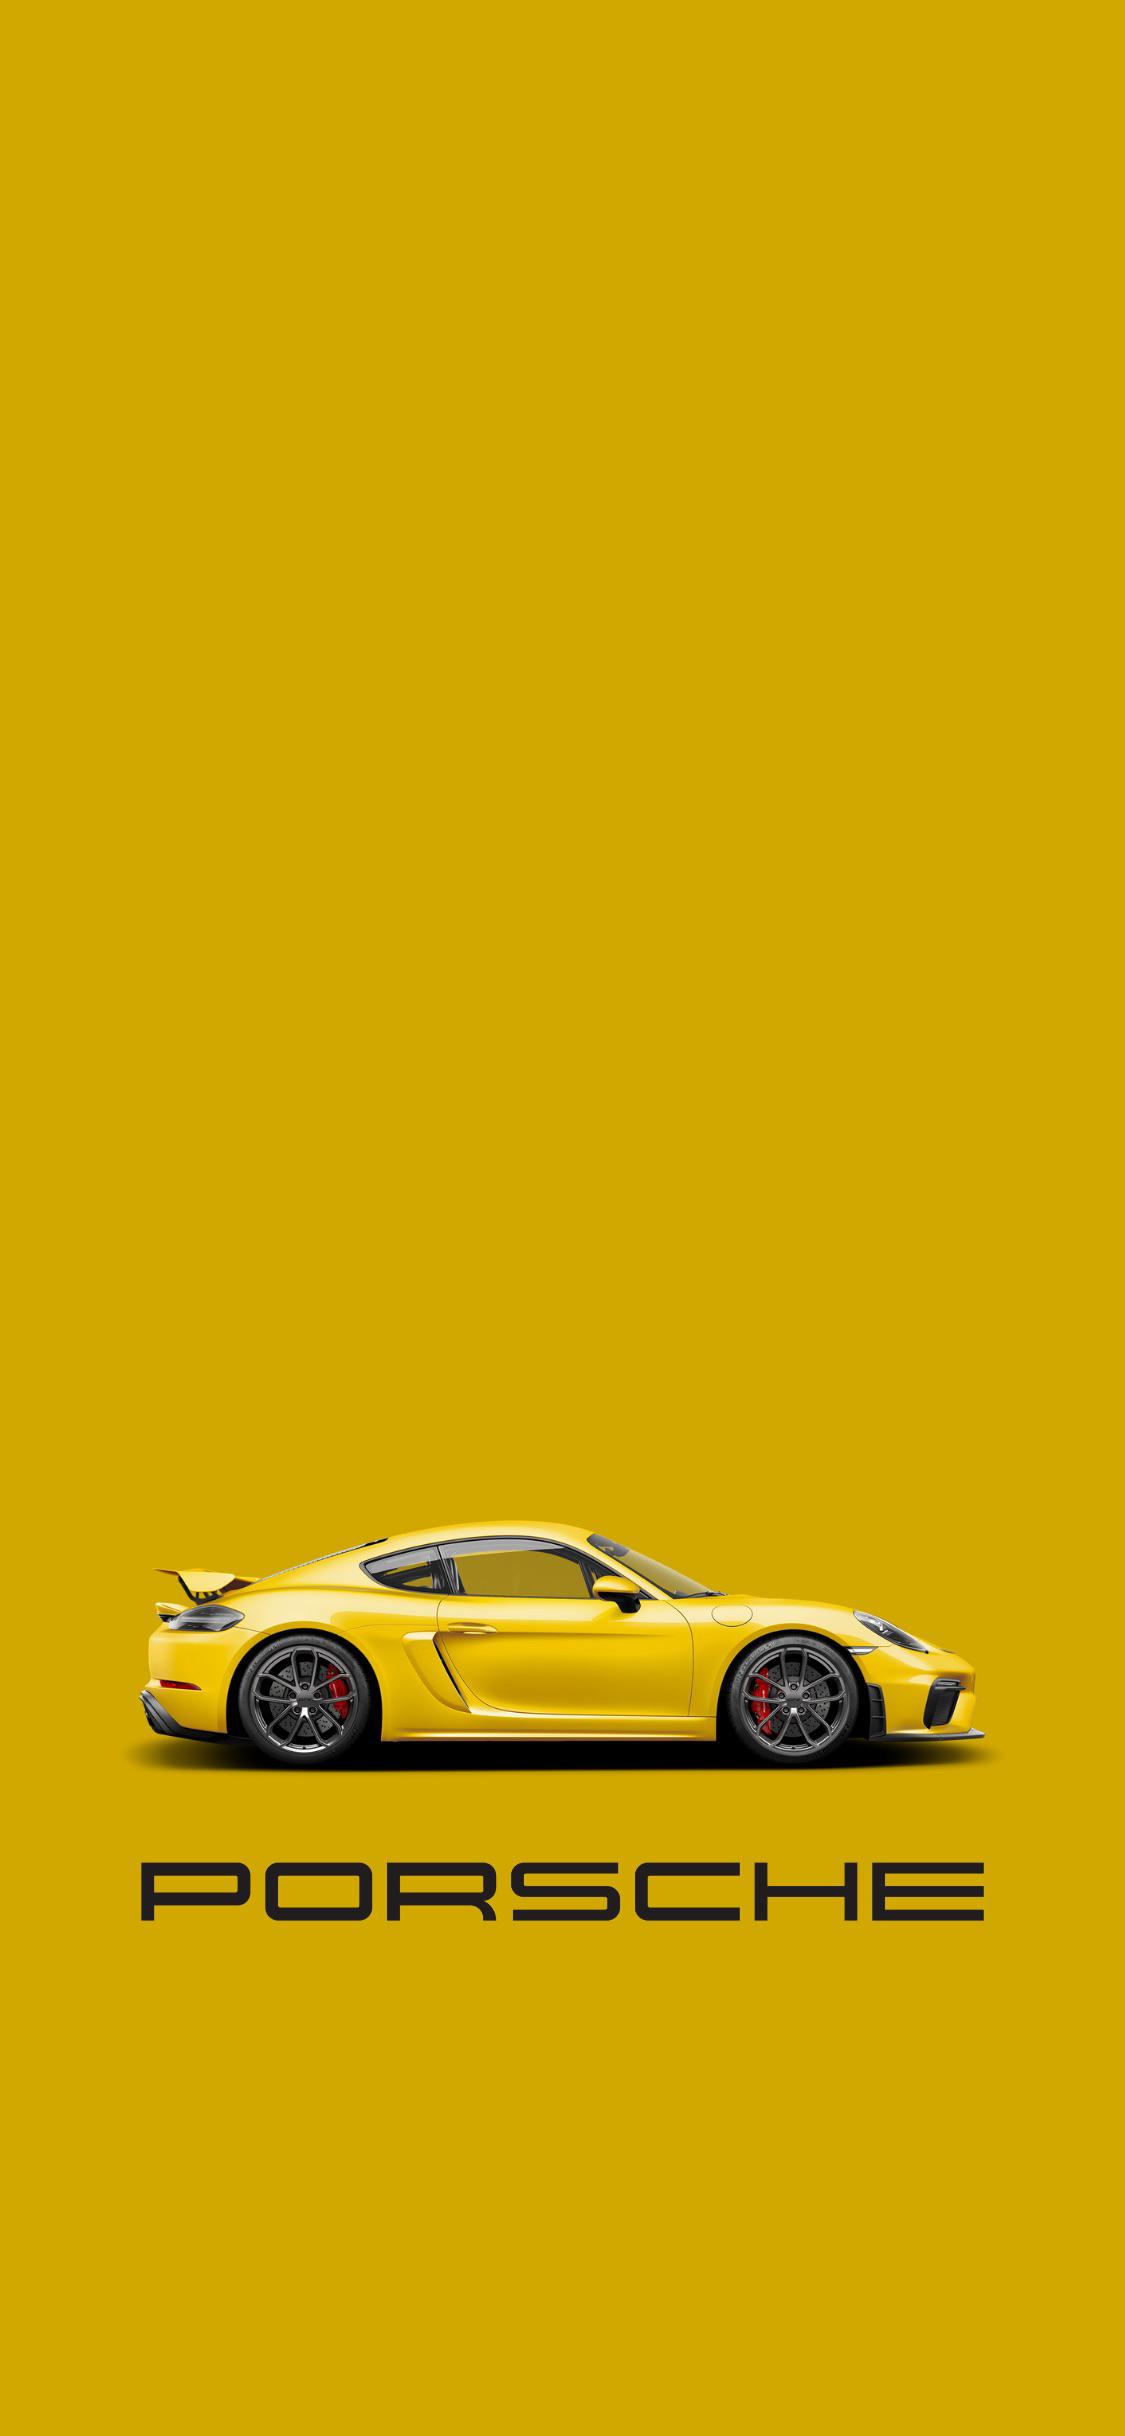 Porsche Cayman Gts Wallpapers